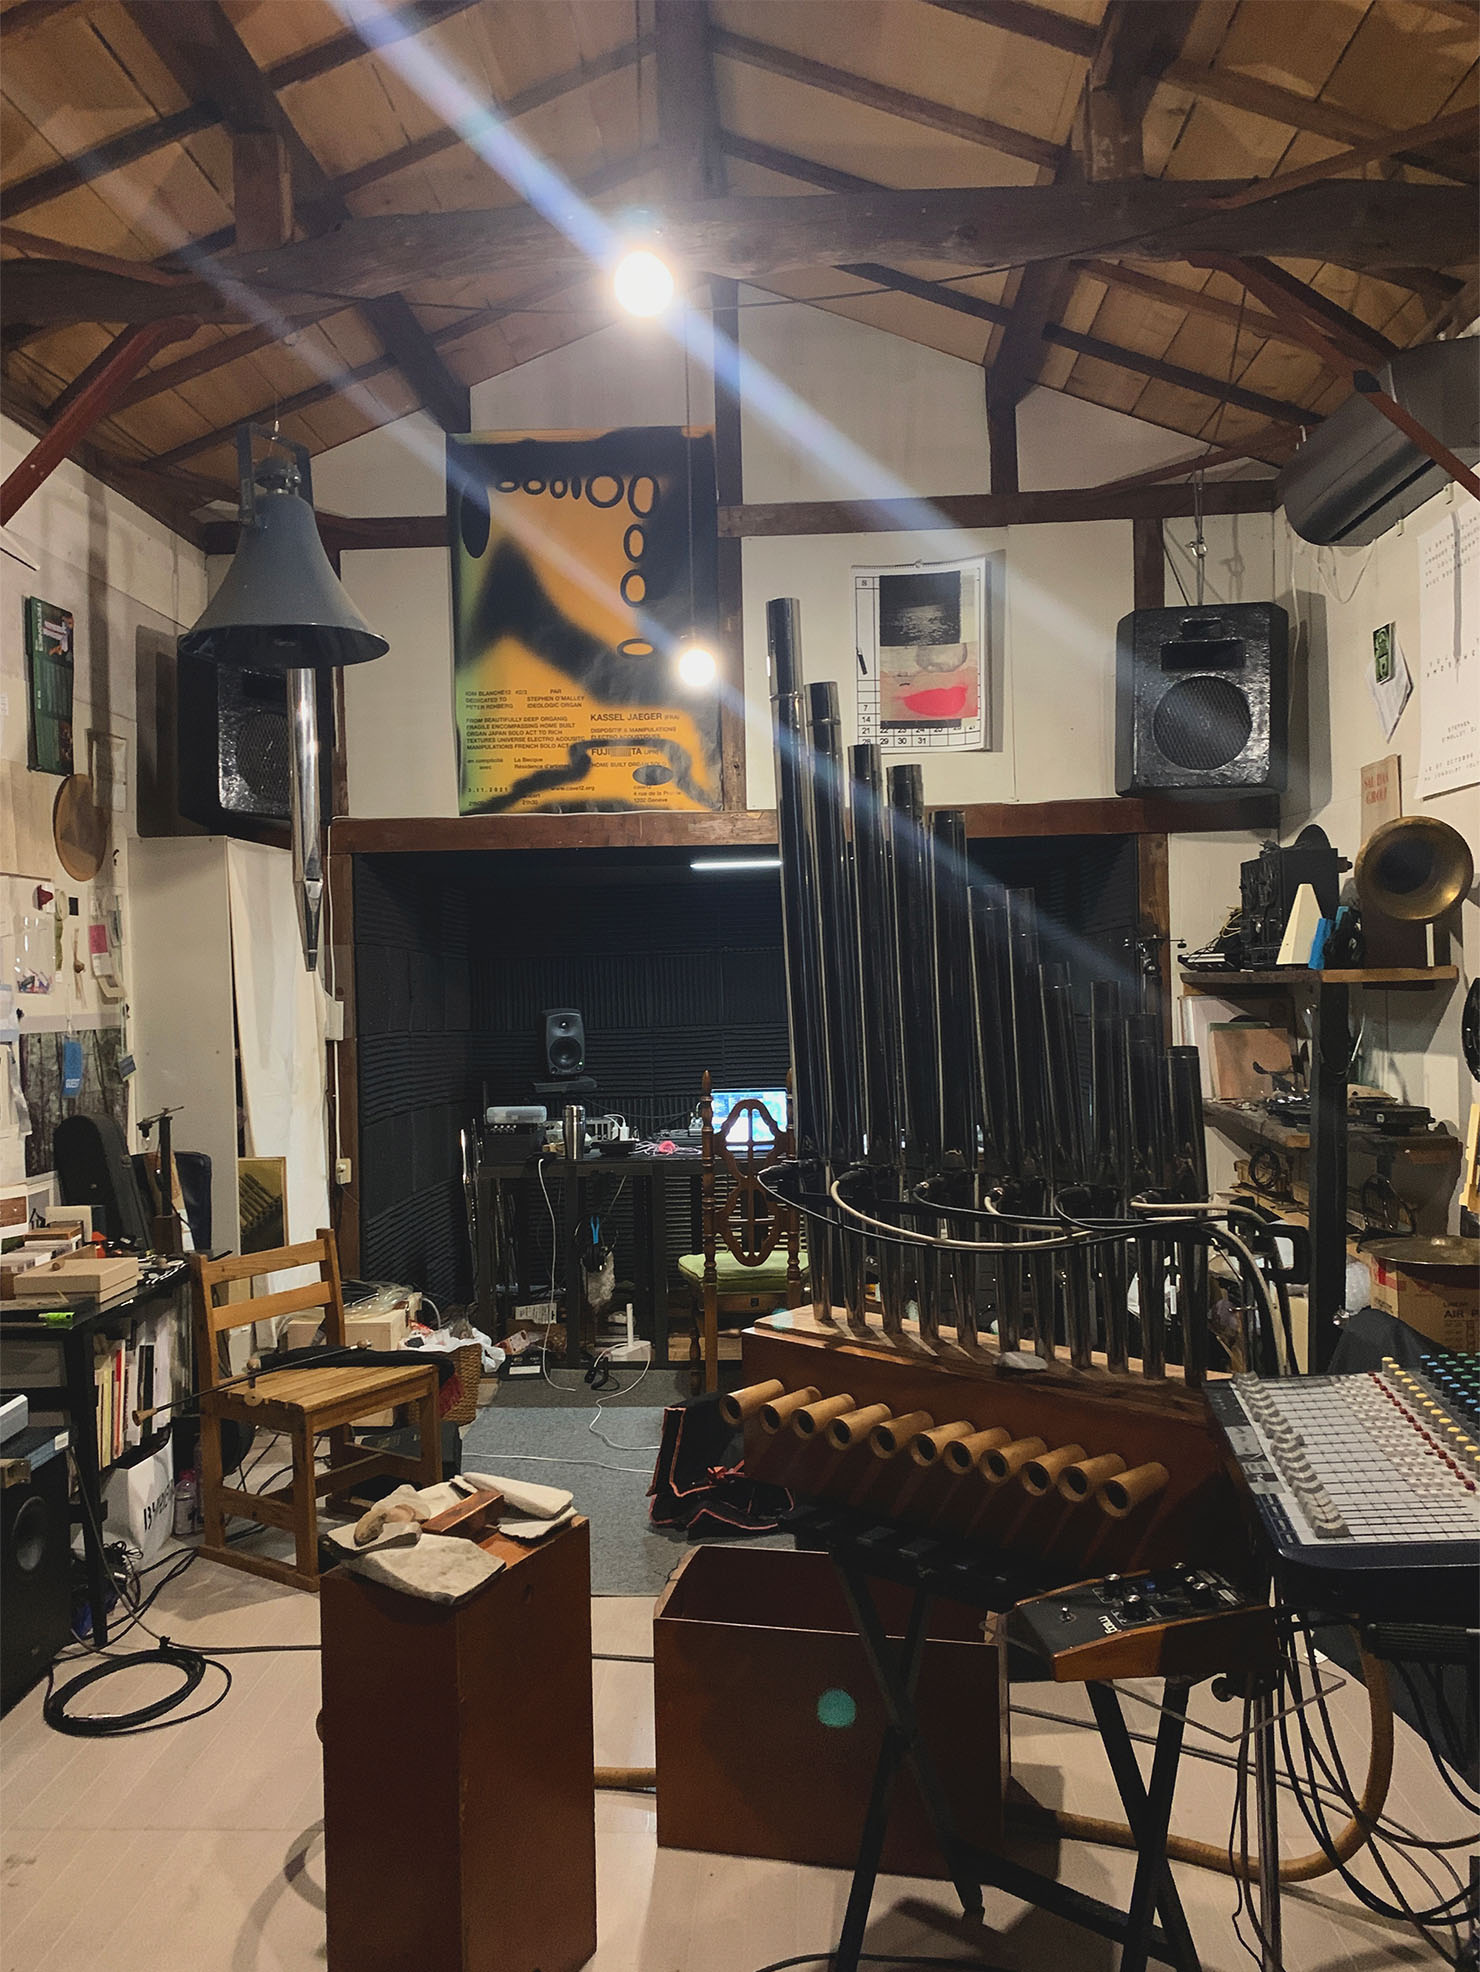 自宅の離れに作られたスタジオには自作のパイプオルガンや録音用機材が並ぶ